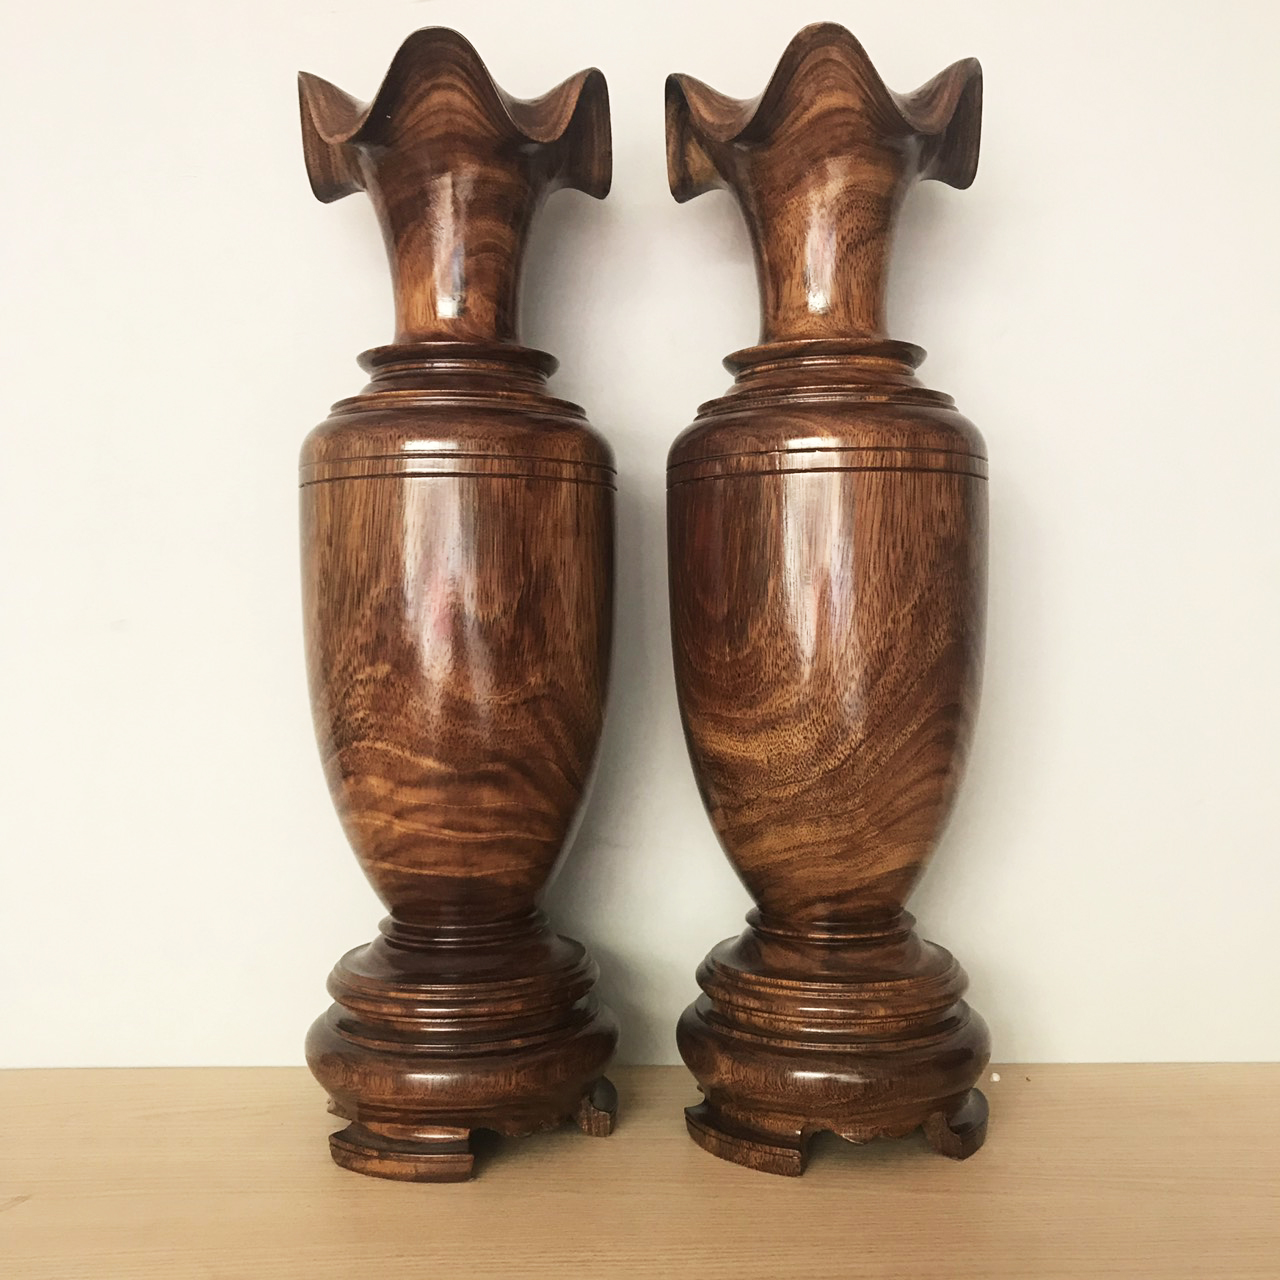 Cặp chân đèn gỗ hương cao 50cm, chân nến thờ gỗ hương cao cấp